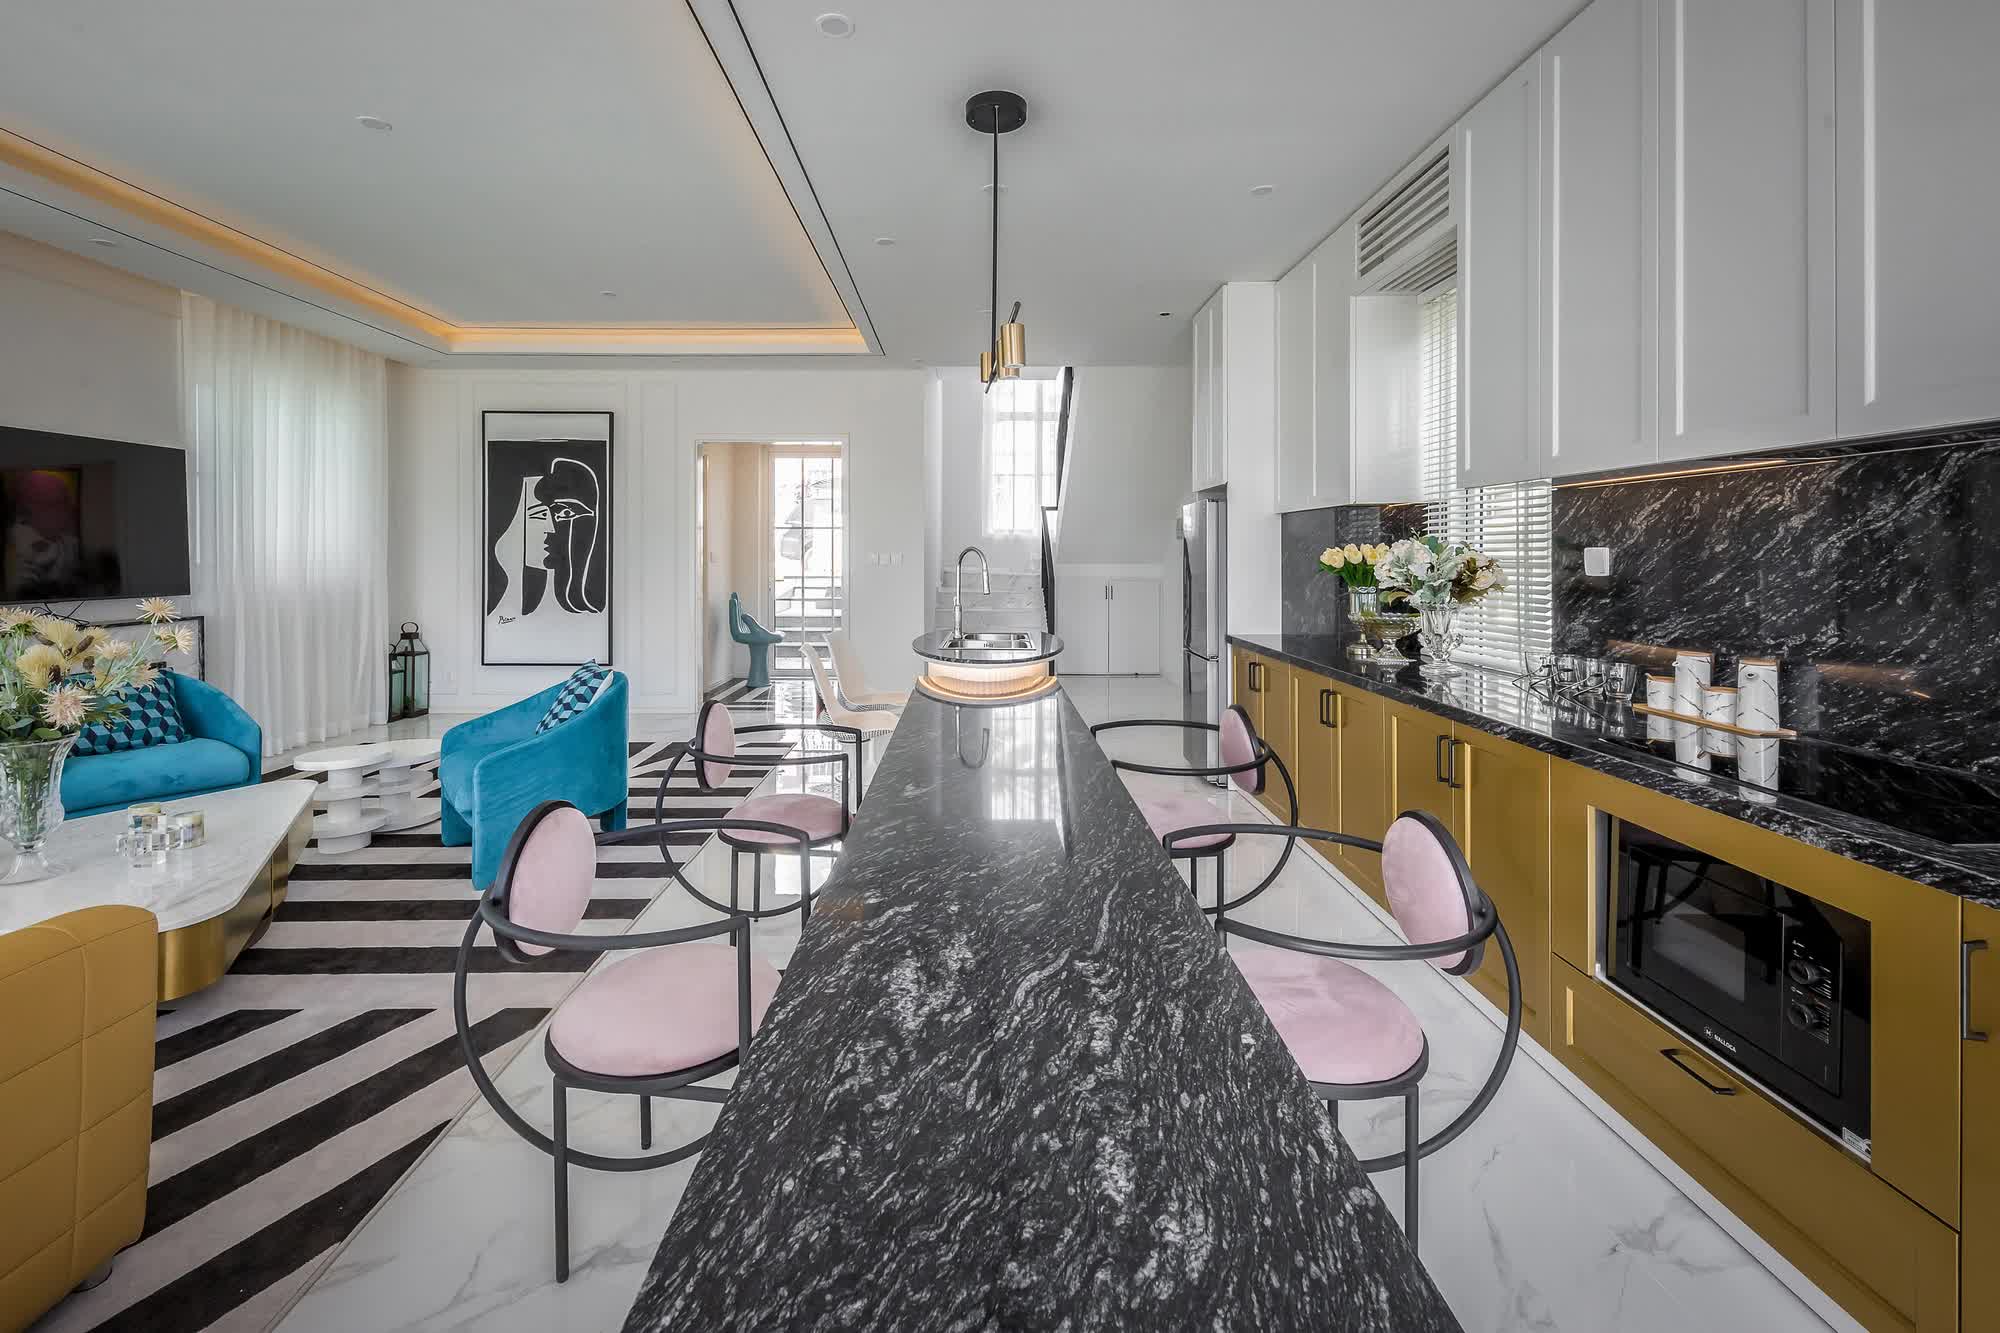 Căn villa 280m² trang bị nội thất giá 3 tỷ đẹp như bản giao hưởng nghệ thuật đương đại bên bờ biển Phan Thiết - Ảnh 14.